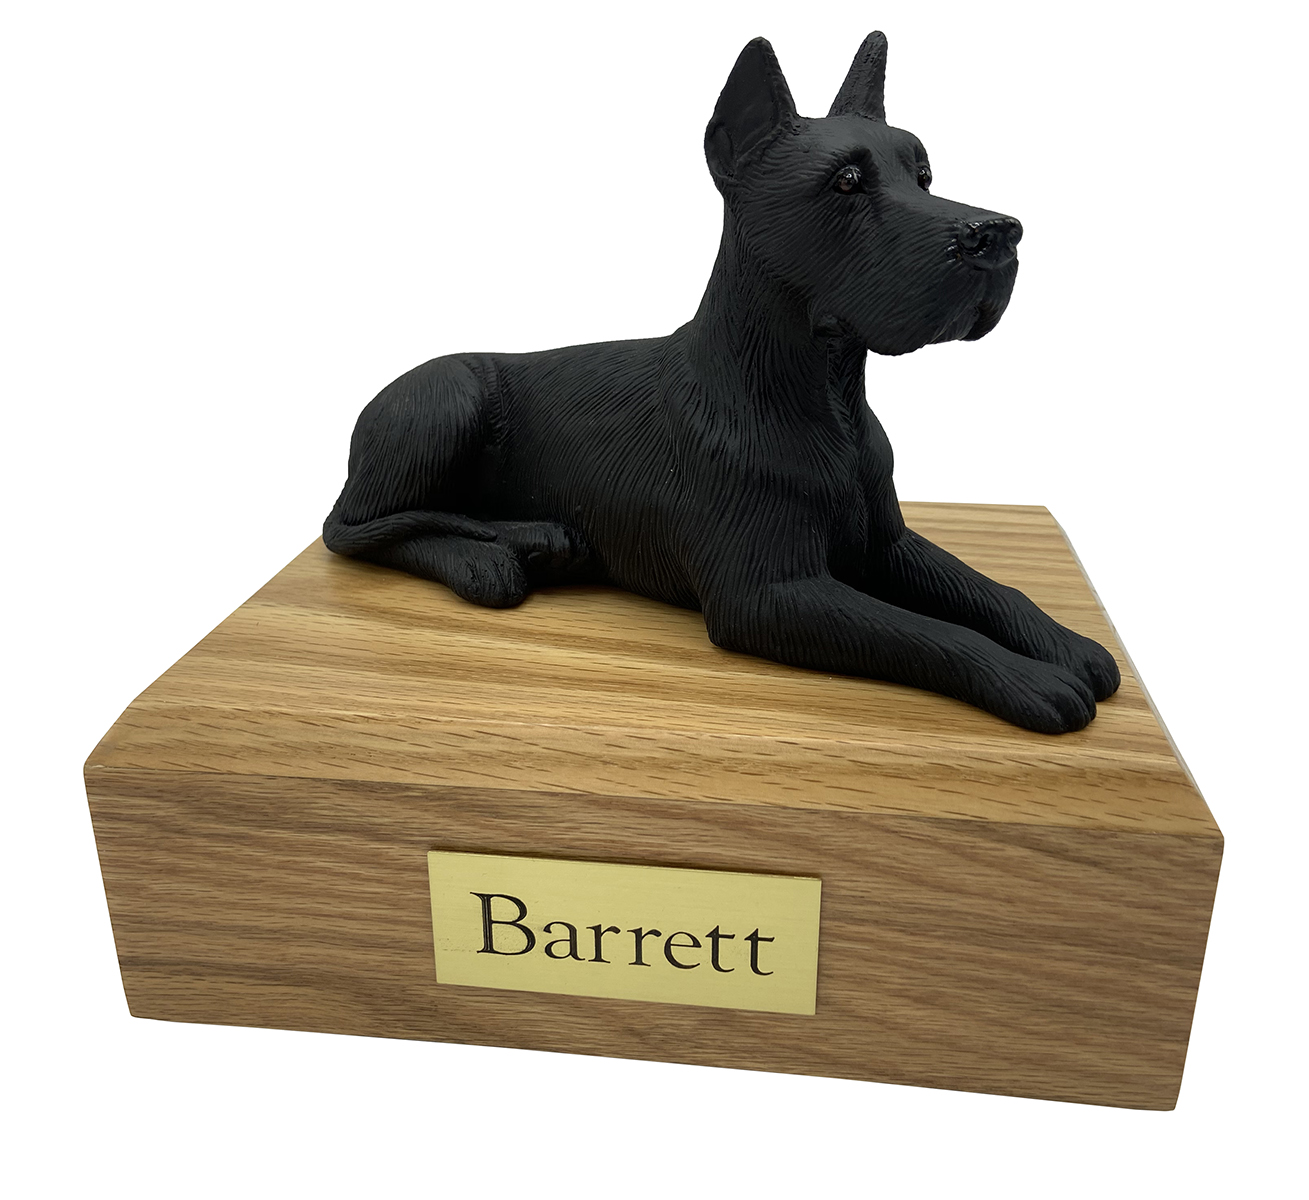 Dog, Great Dane, Black (Ears Up) - Figurine Urn